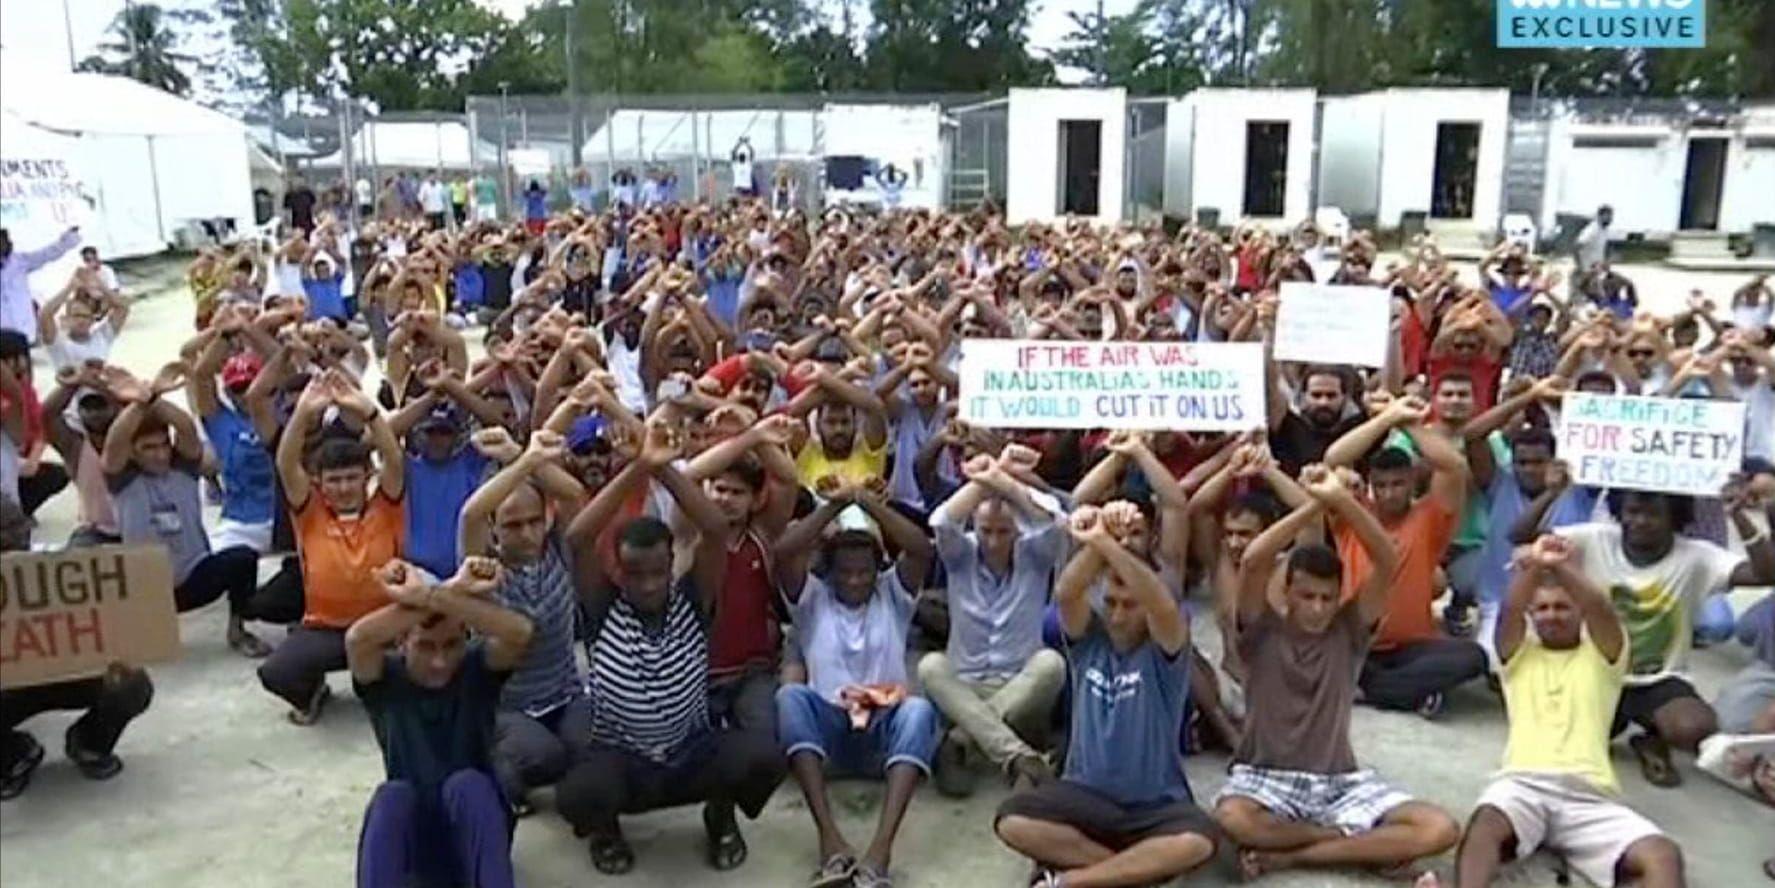 Asylsökare under en protest i tisdags mot beslutet att stänga det läger där de är inhysta på ön Manus i Papua Nya Guinea.